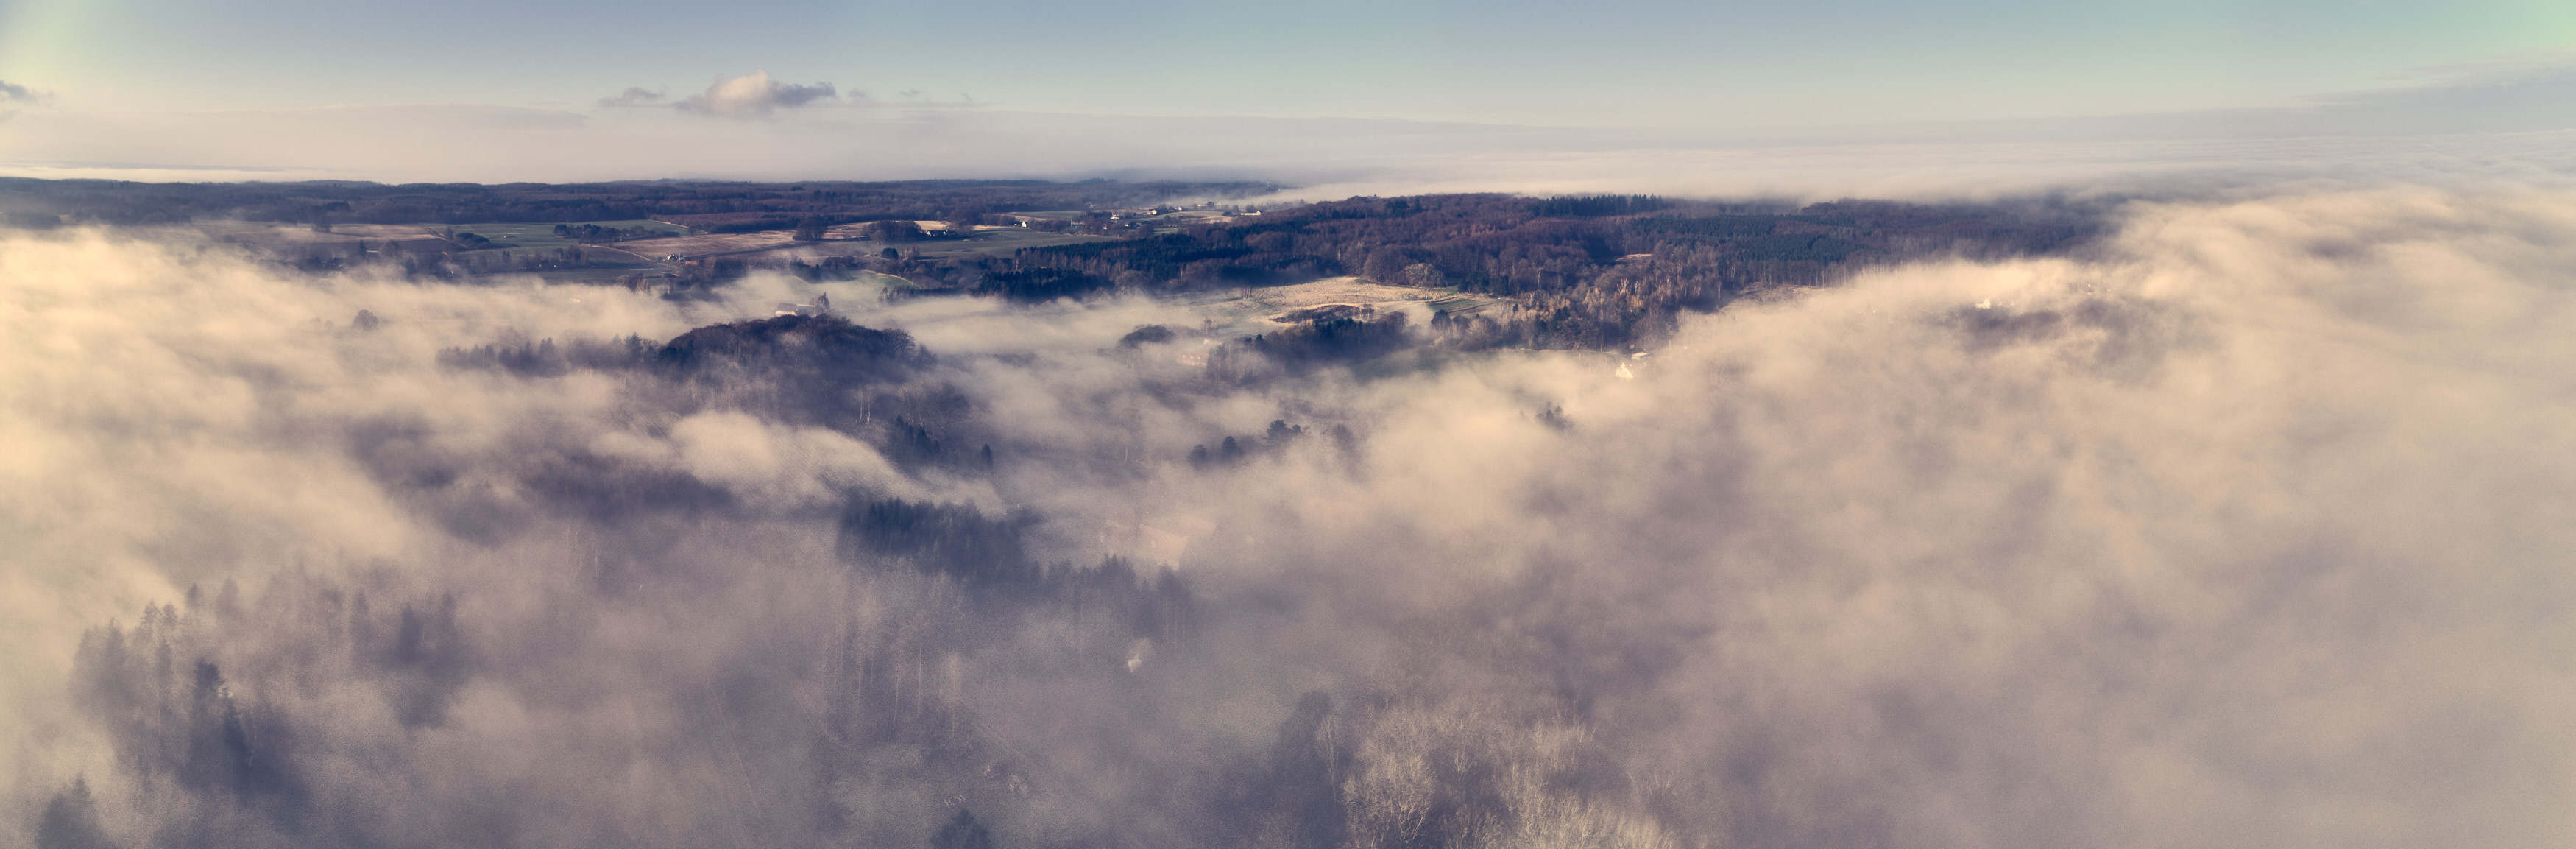 dronographica dronebillede tåge drone sorø omegn